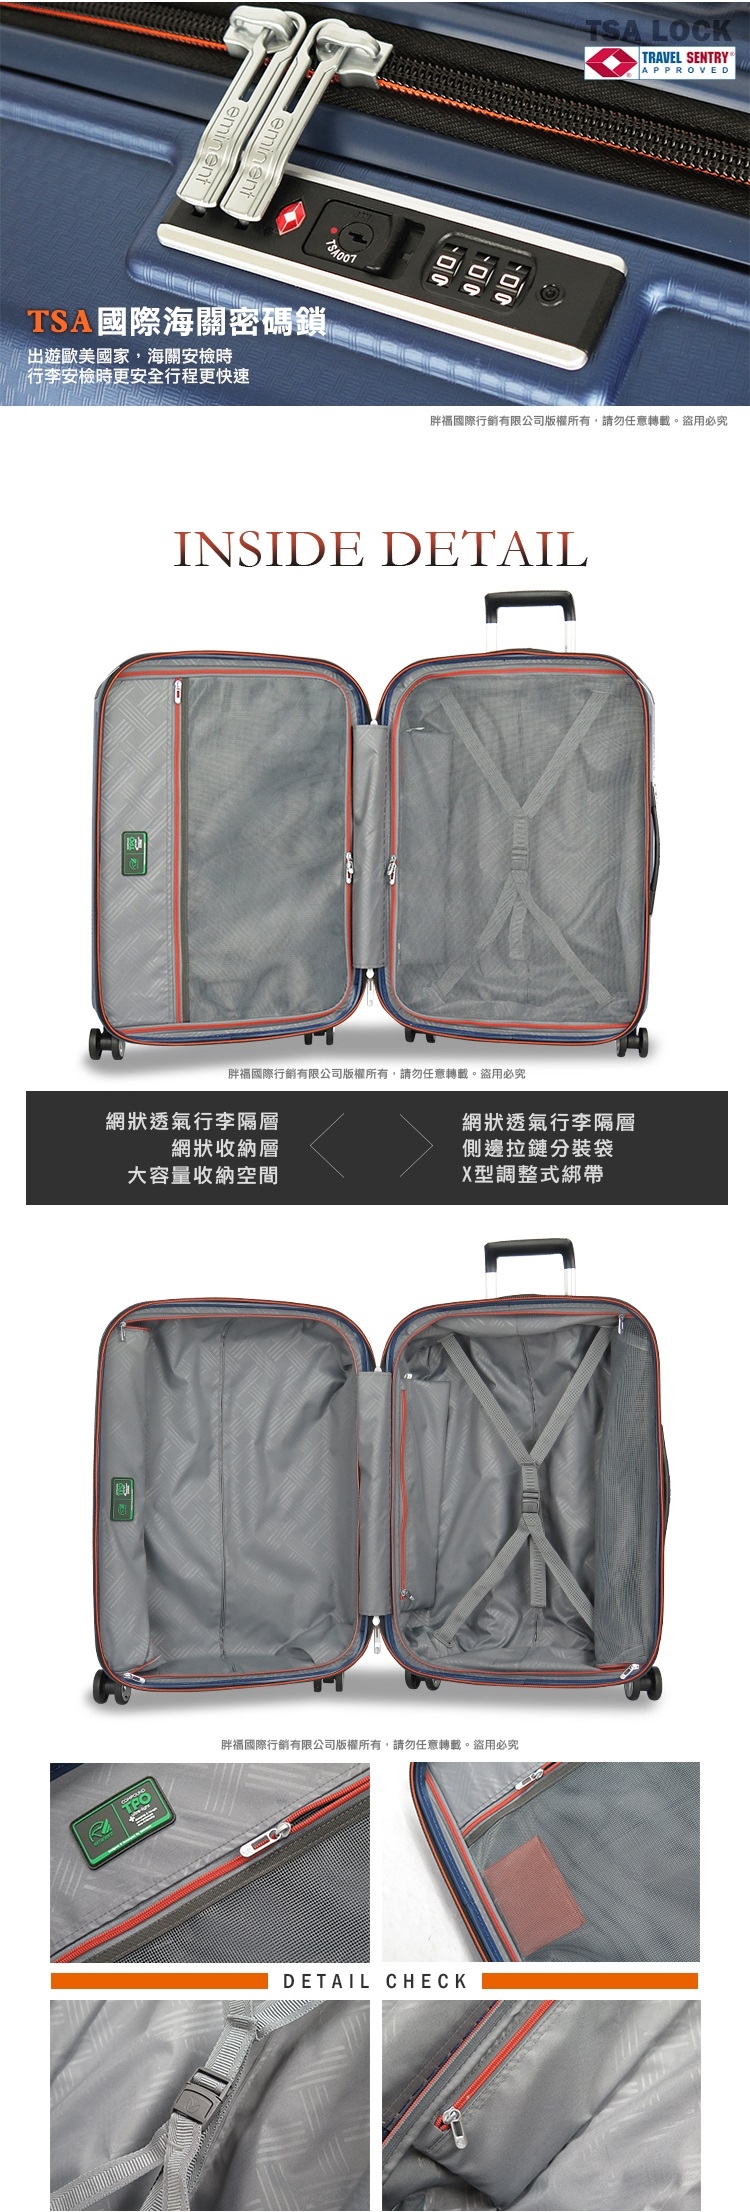 eminent萬國通路 行李箱輕量 防爆防盜拉鏈 MIT台灣製造28吋 KH67(黑岩灰)